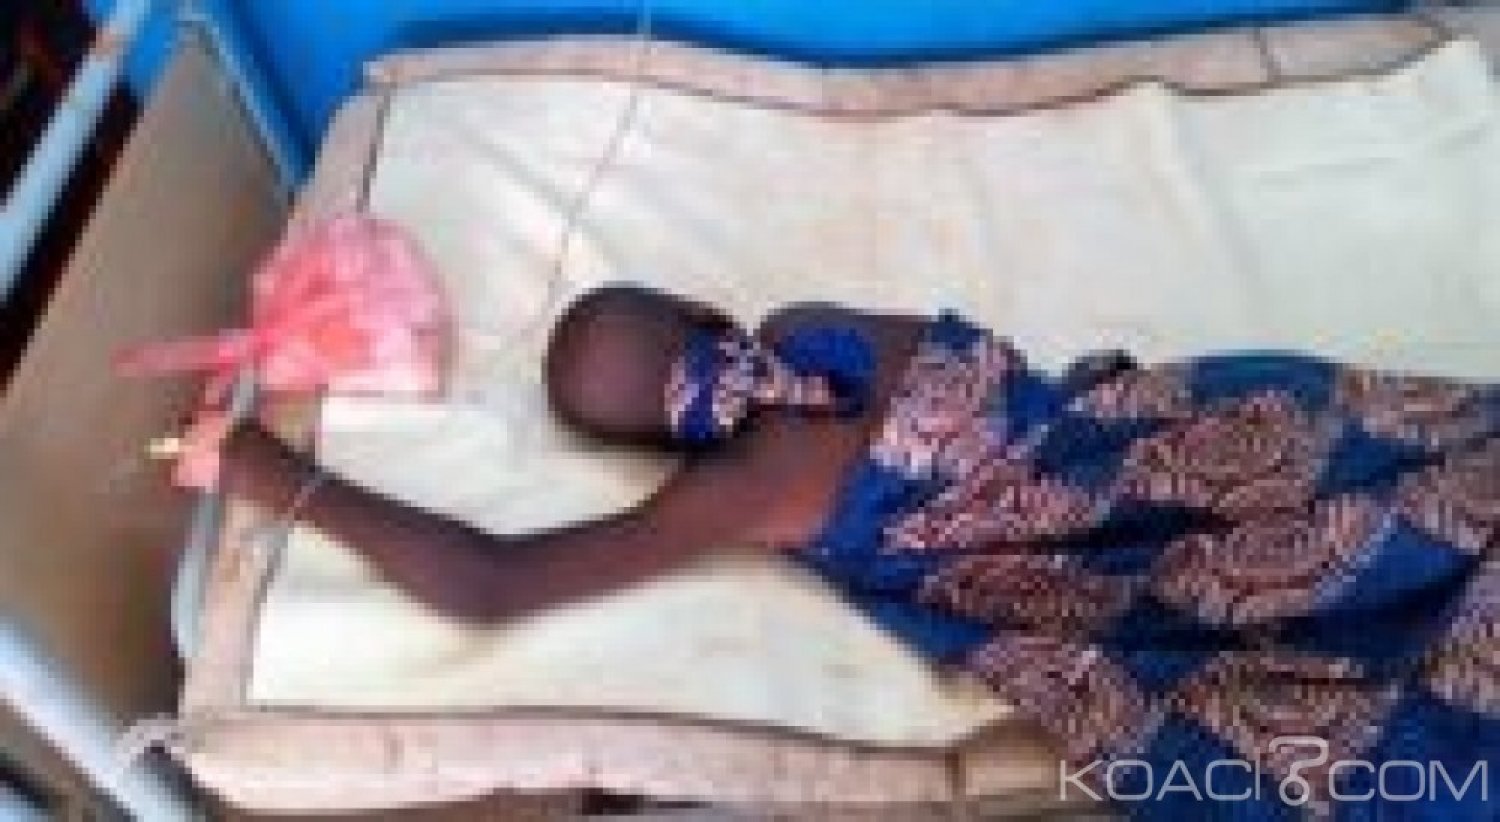 Côte d'Ivoire : Jeune  Garçon  sodomisé  à  San Pedro, le ministère de la famille  se saisit  de l'affaire et dénonce un crime odieux